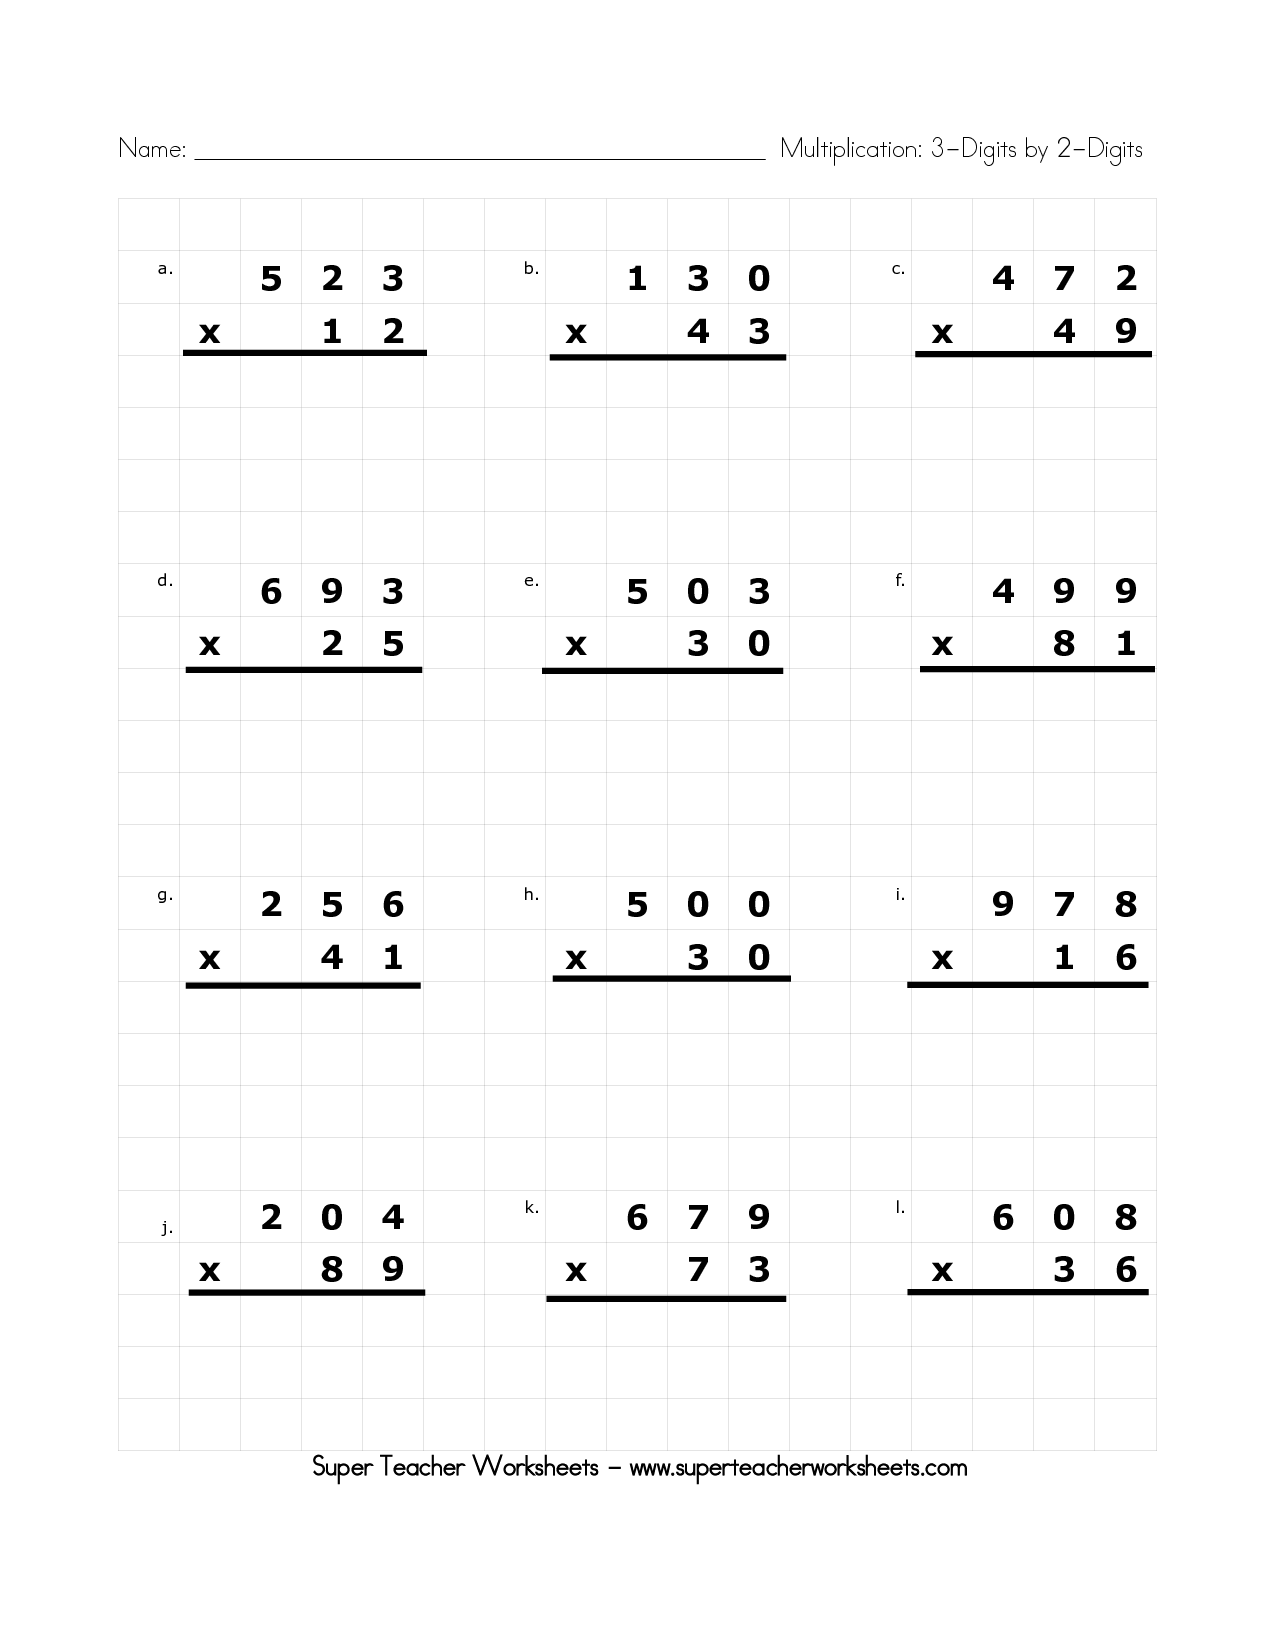  Super Teacher Worksheets Multiplication 3rd Grade 1000 Images About super teacher worksheets 